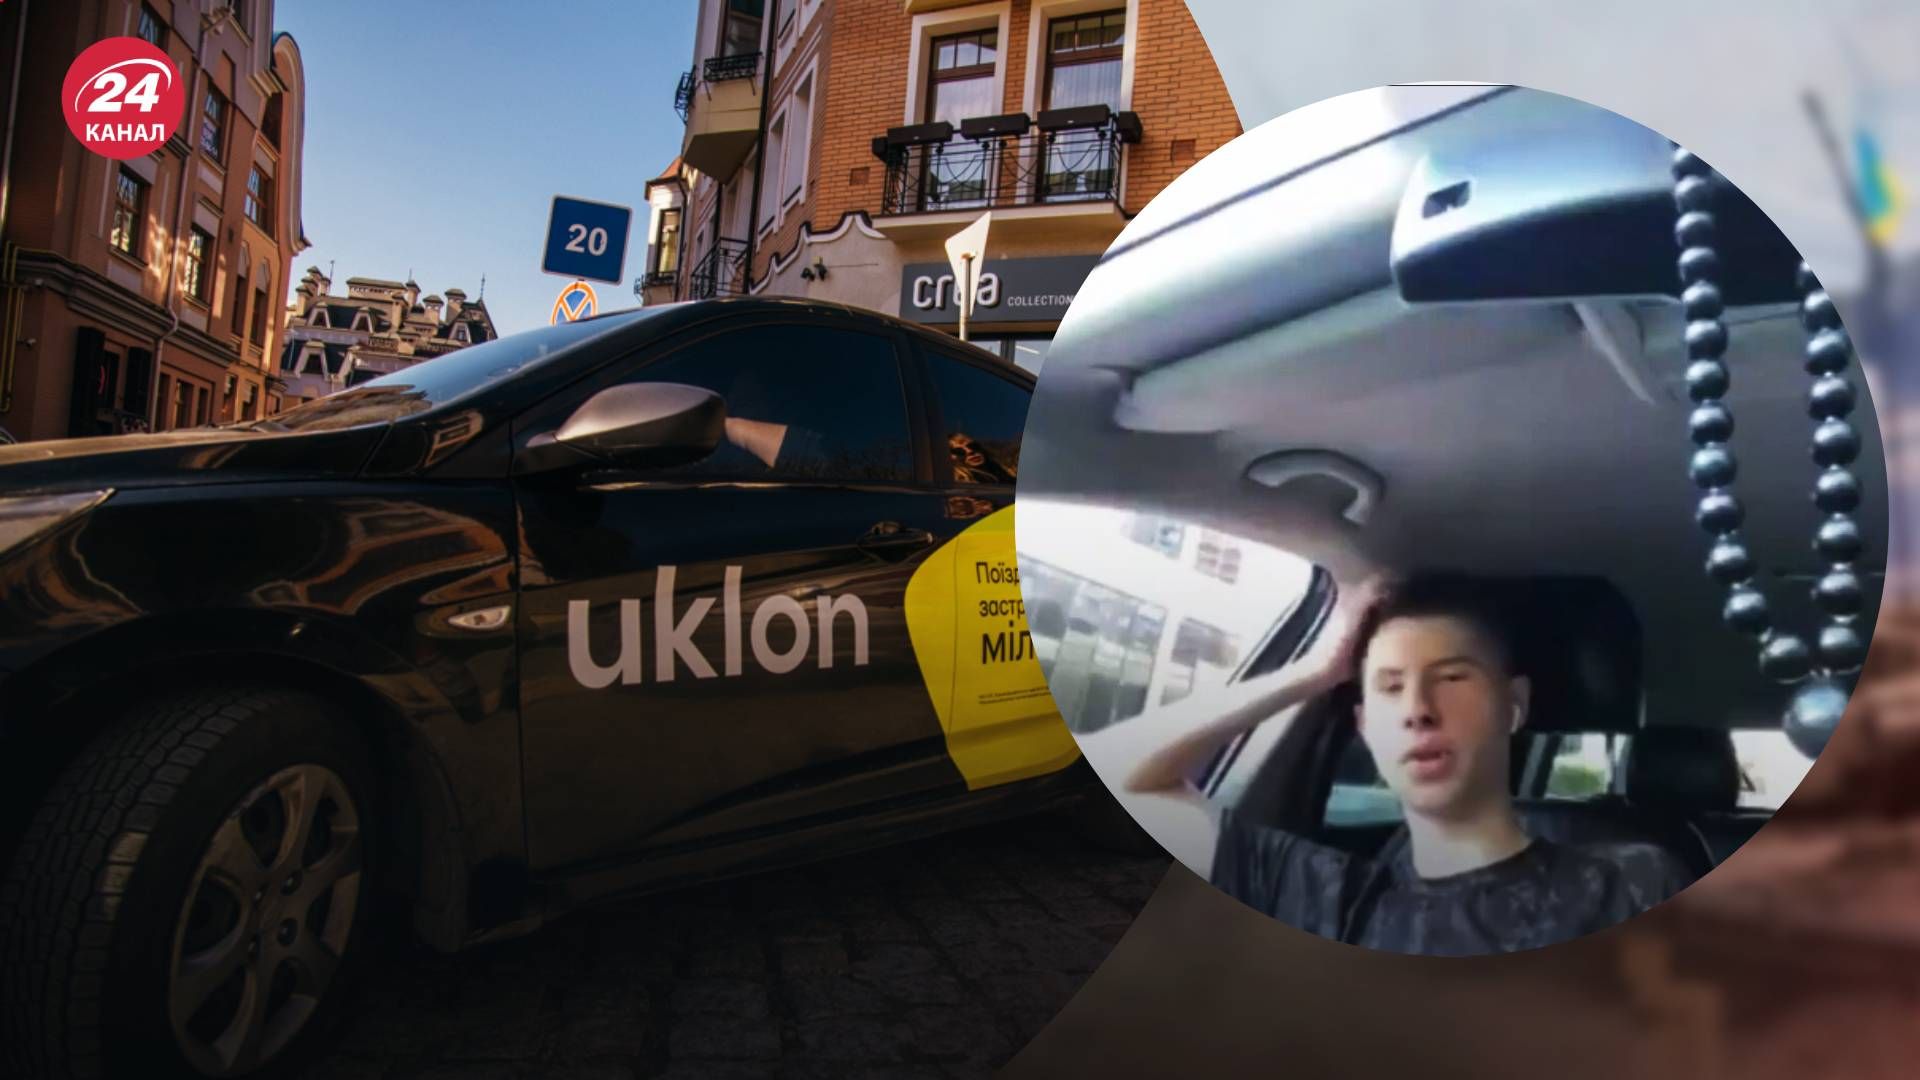 Таксист Uklon в Киеве попал в скандал